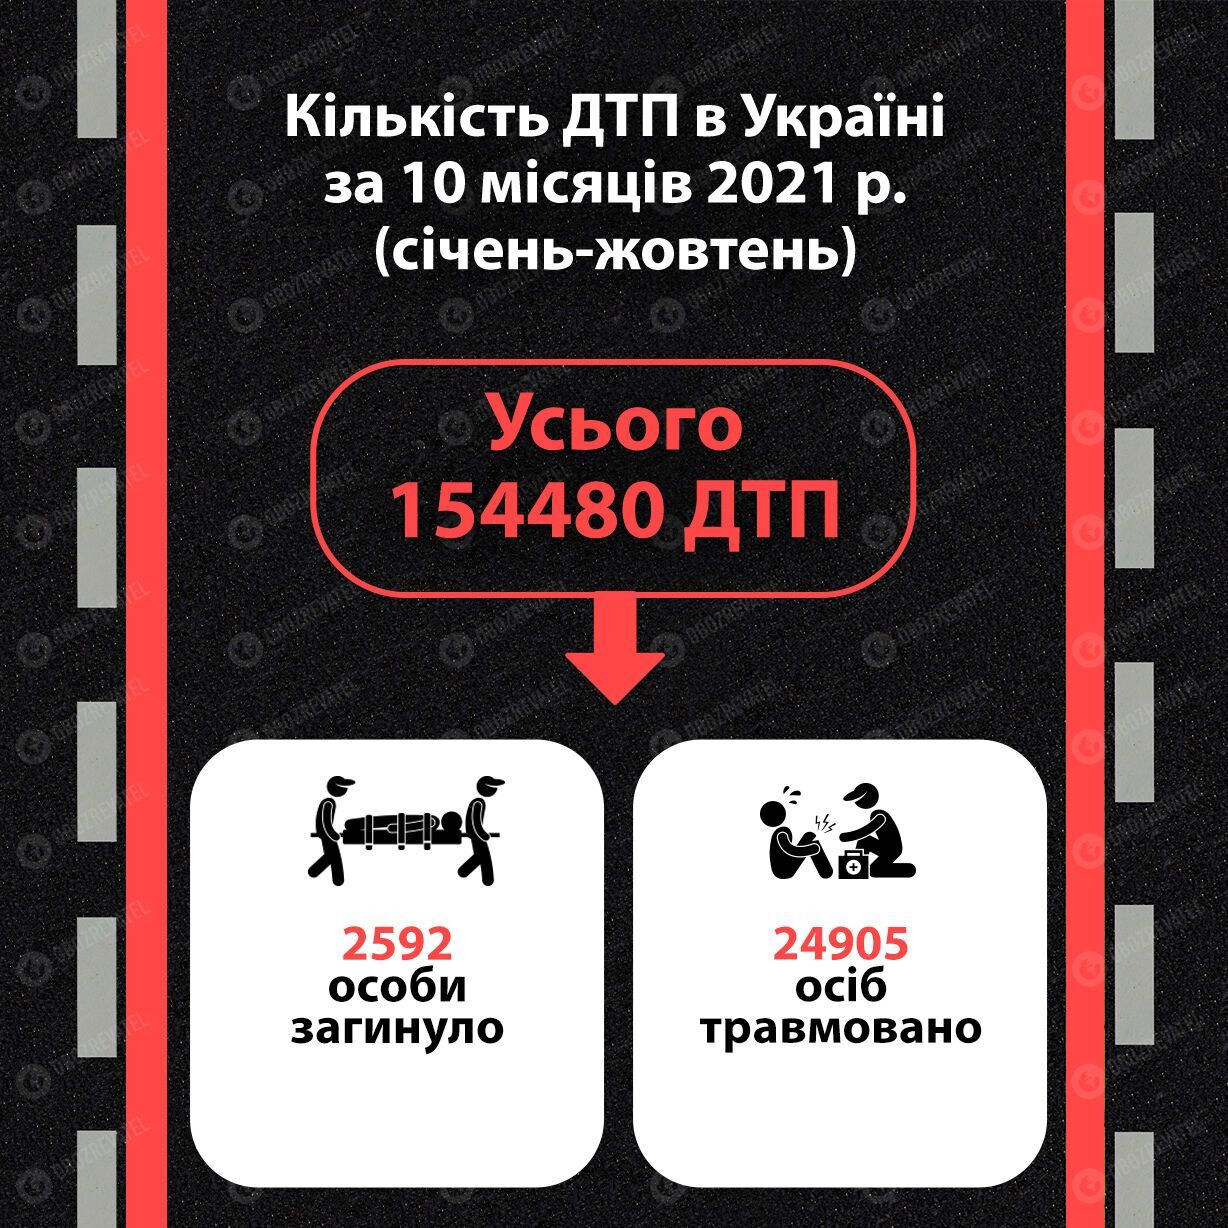 Статистика ДТП в Україні 2021 року.